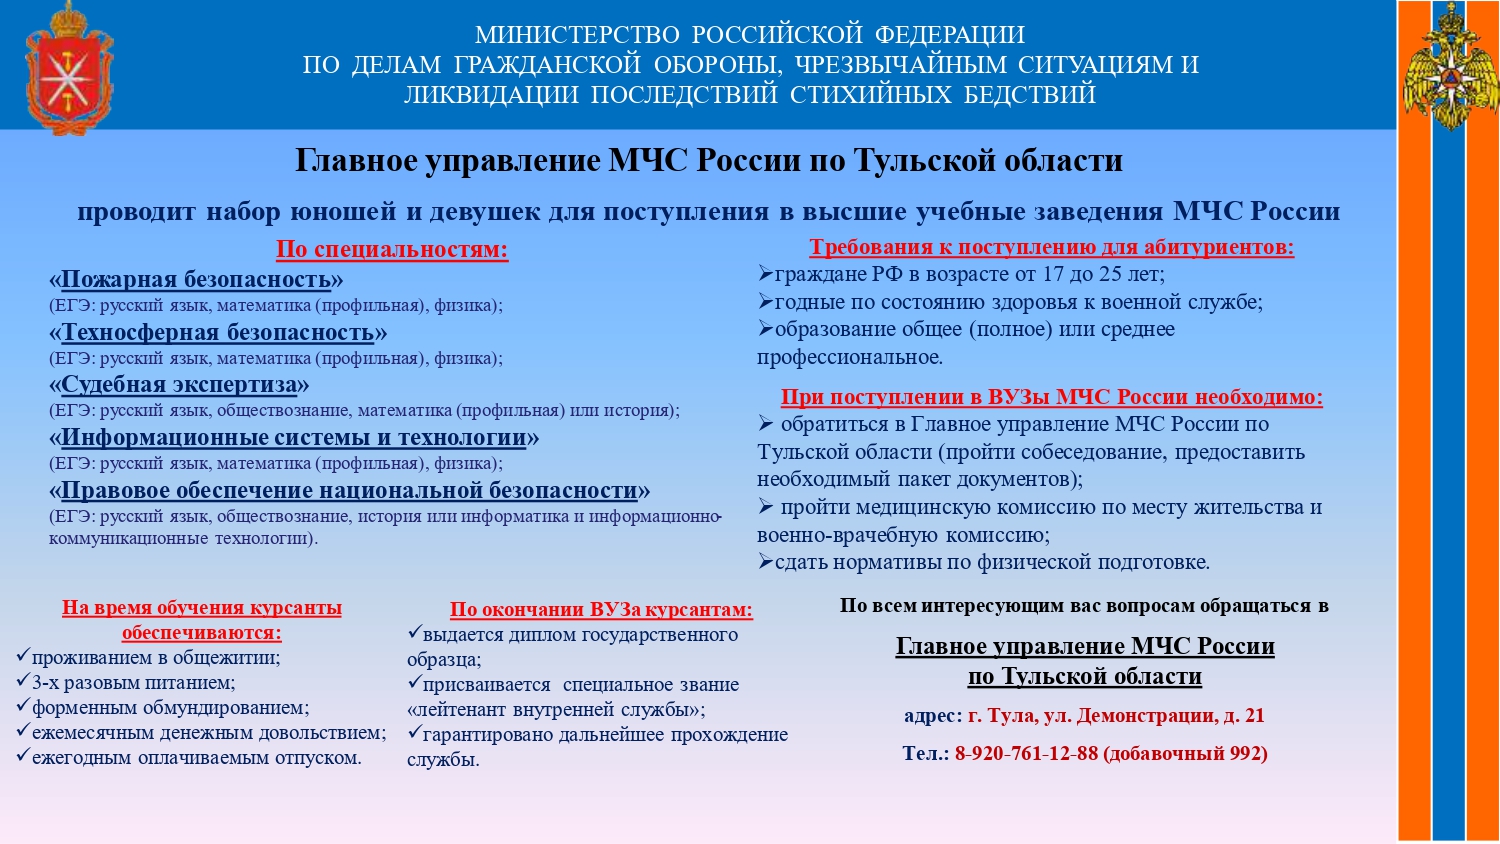 Главное управление МЧС России по Тульской области проводит набор юношей и девушек для поступления в высшие учебные заведения МЧС России.